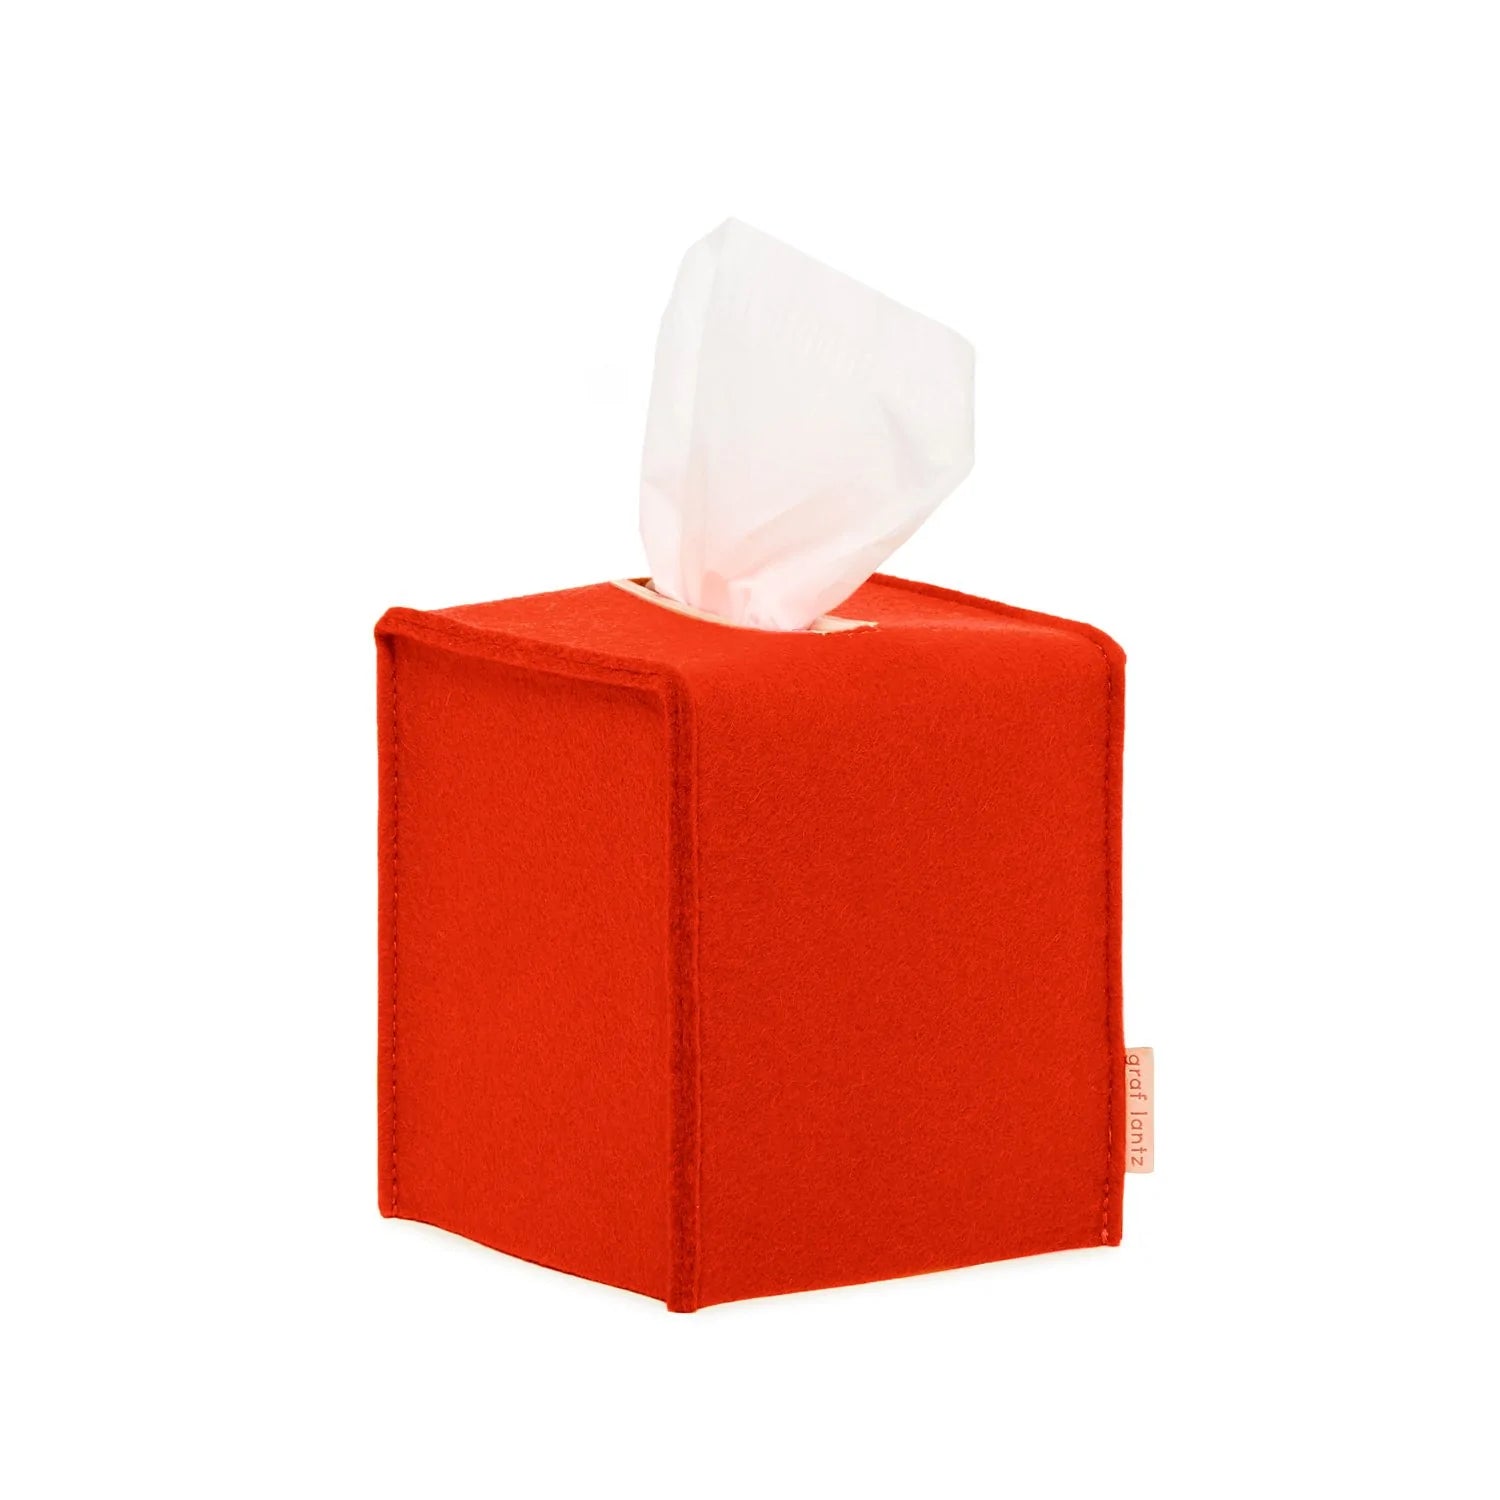 Tissue Box Cover Small - Orange